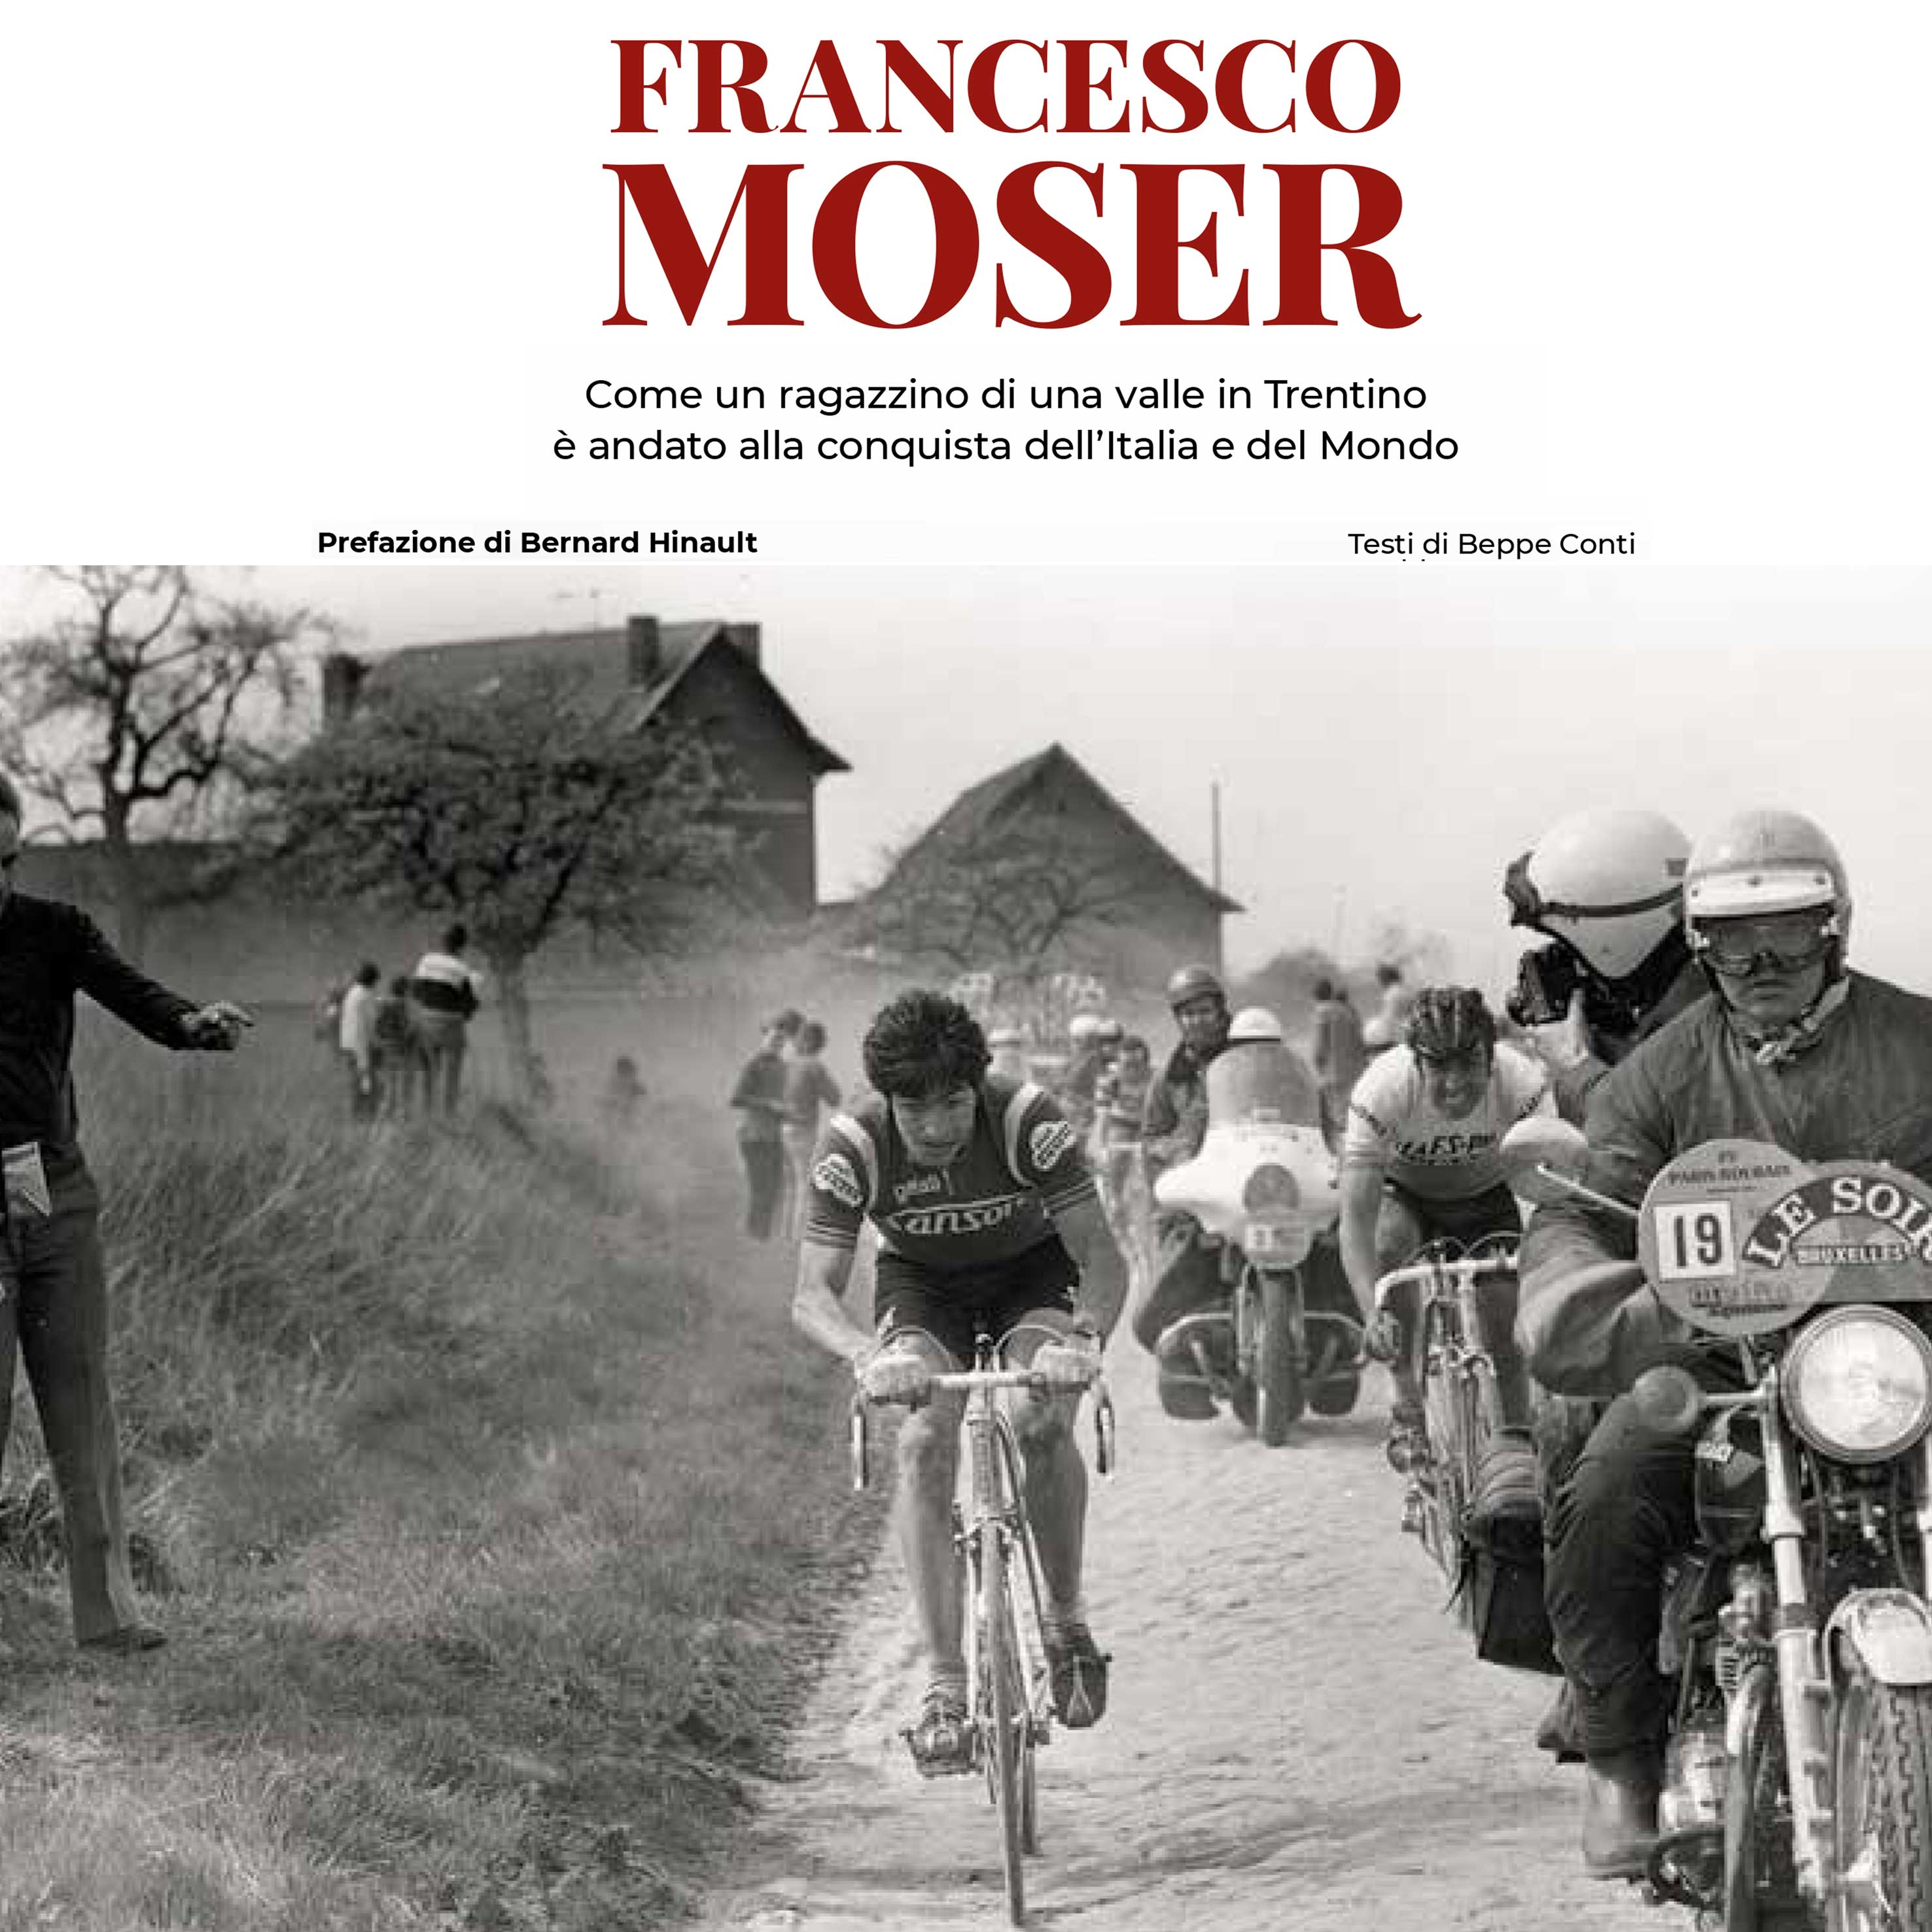 Francesco Moser ha compiuto 70 anni. Alla vita e alla storia di quest'uomo è stato dedicato il libro 